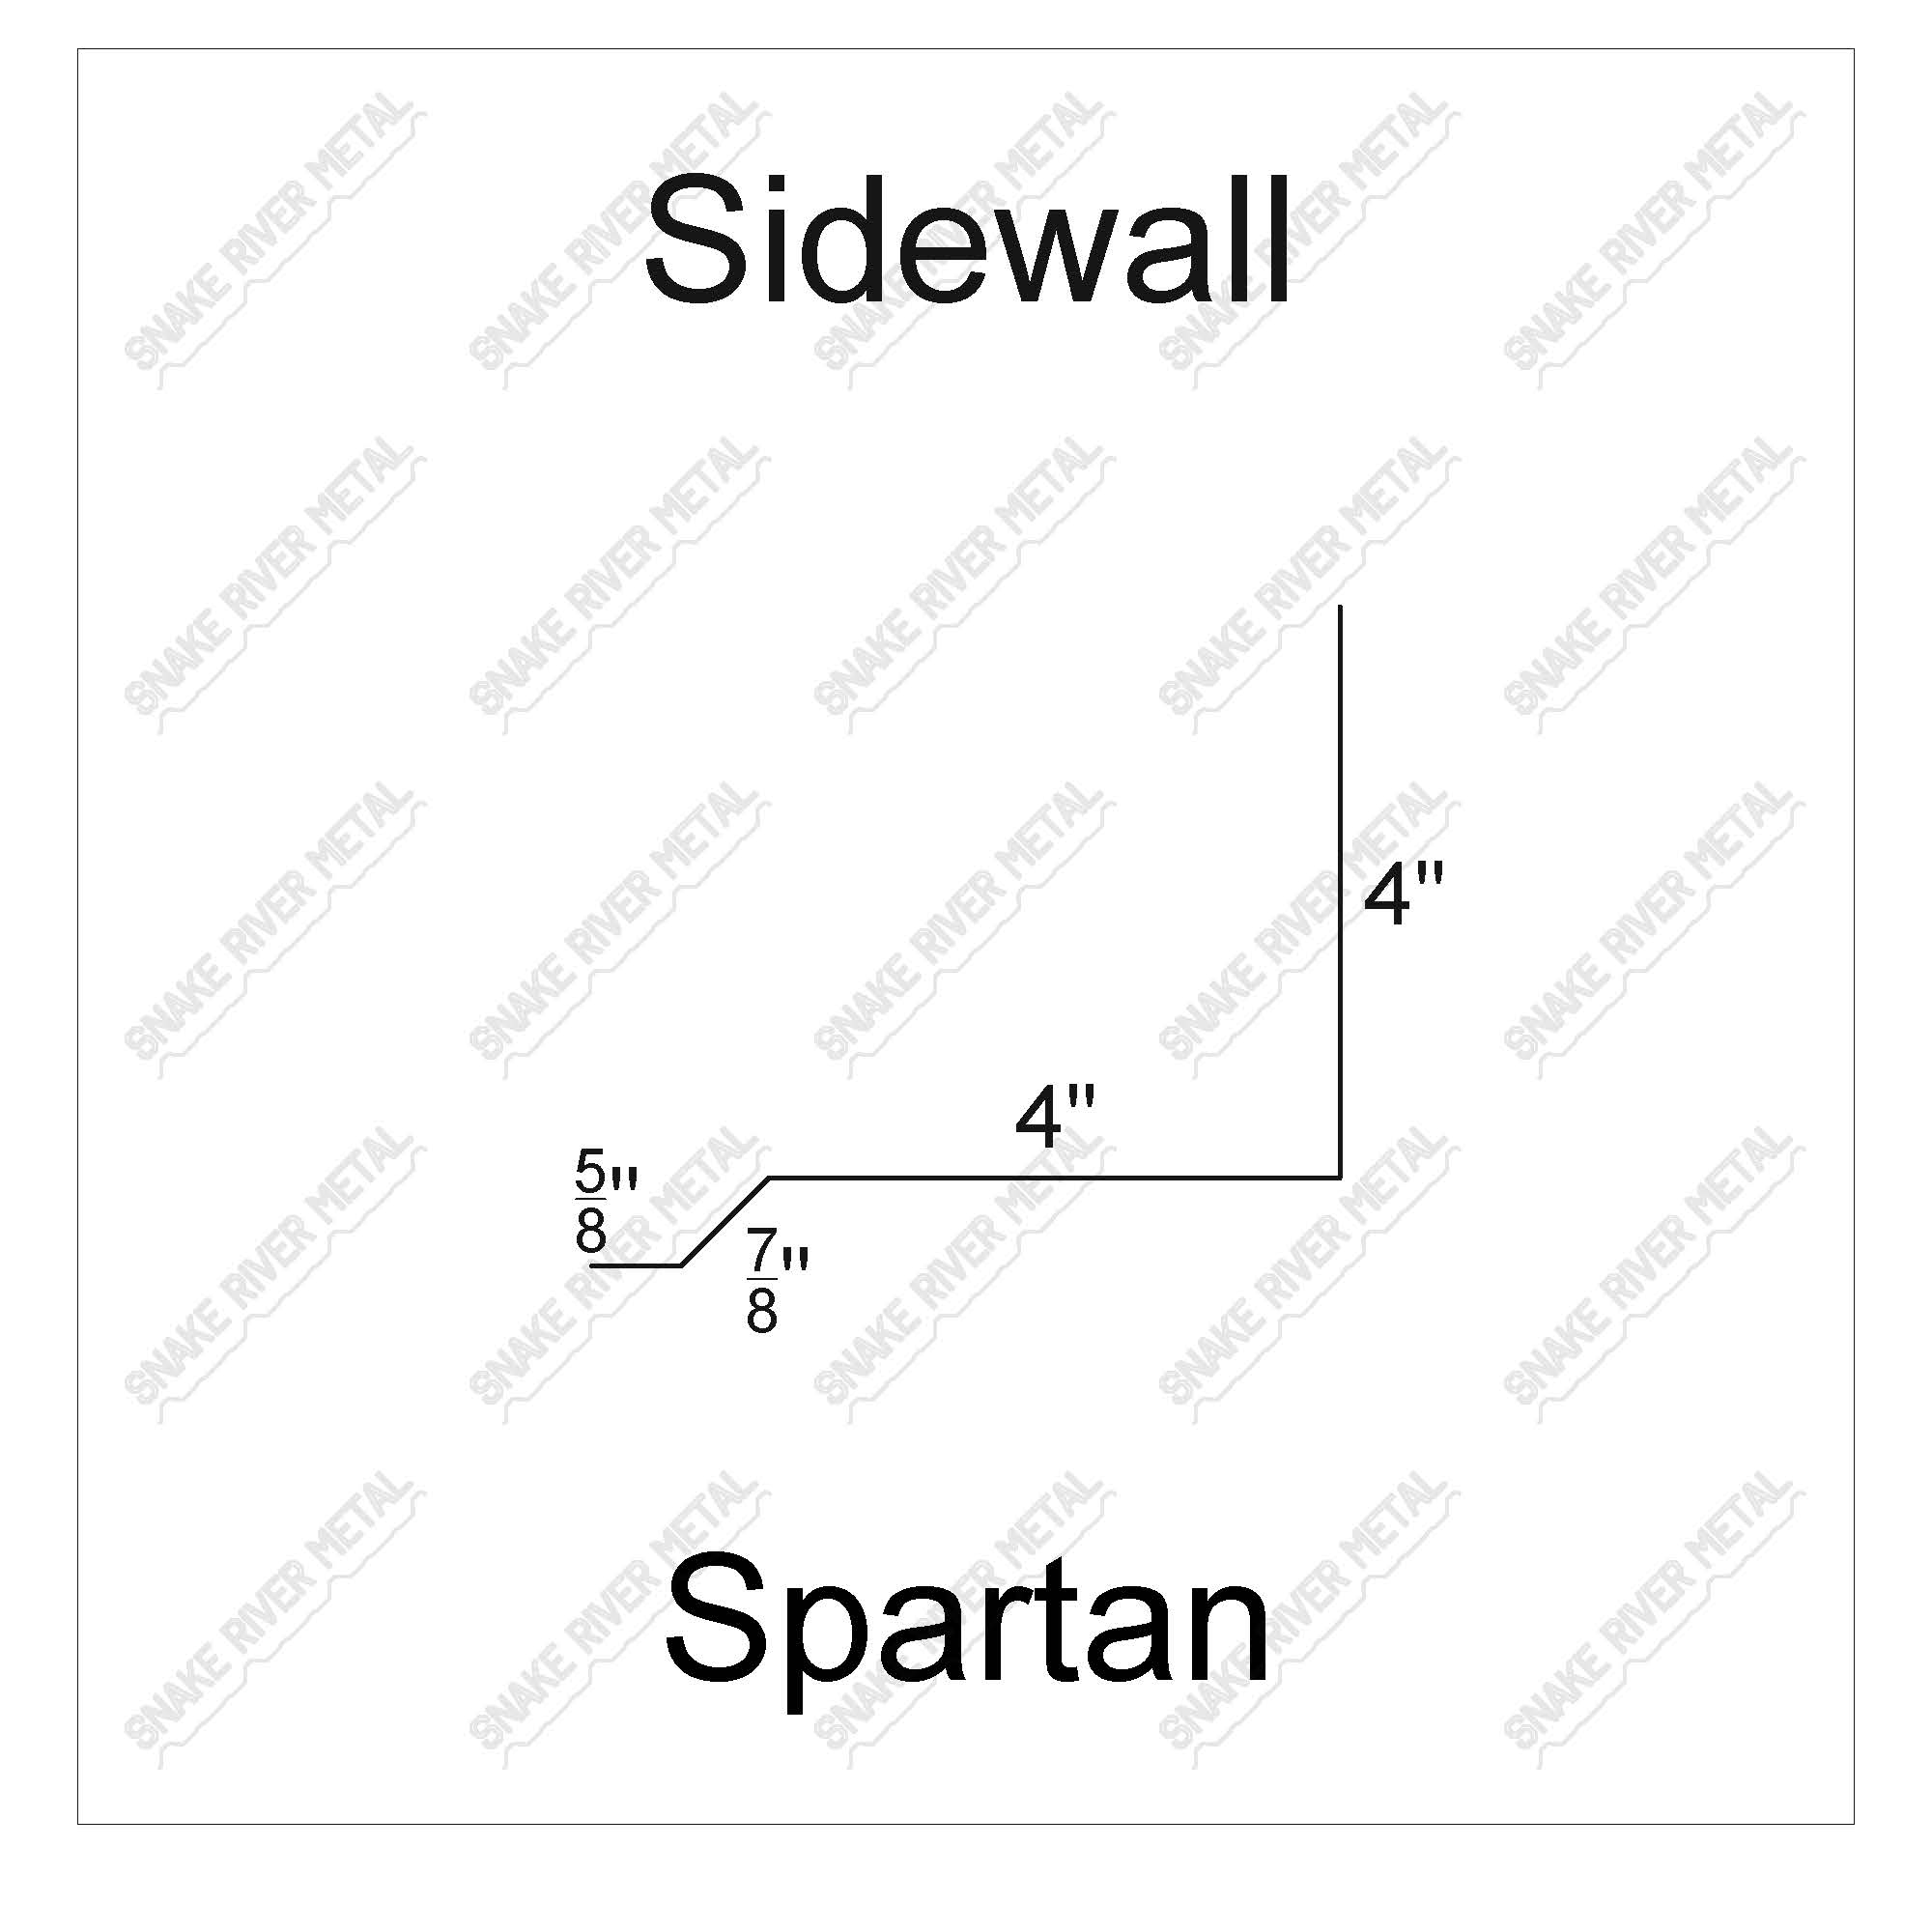 Sidewall - SpartanTrim